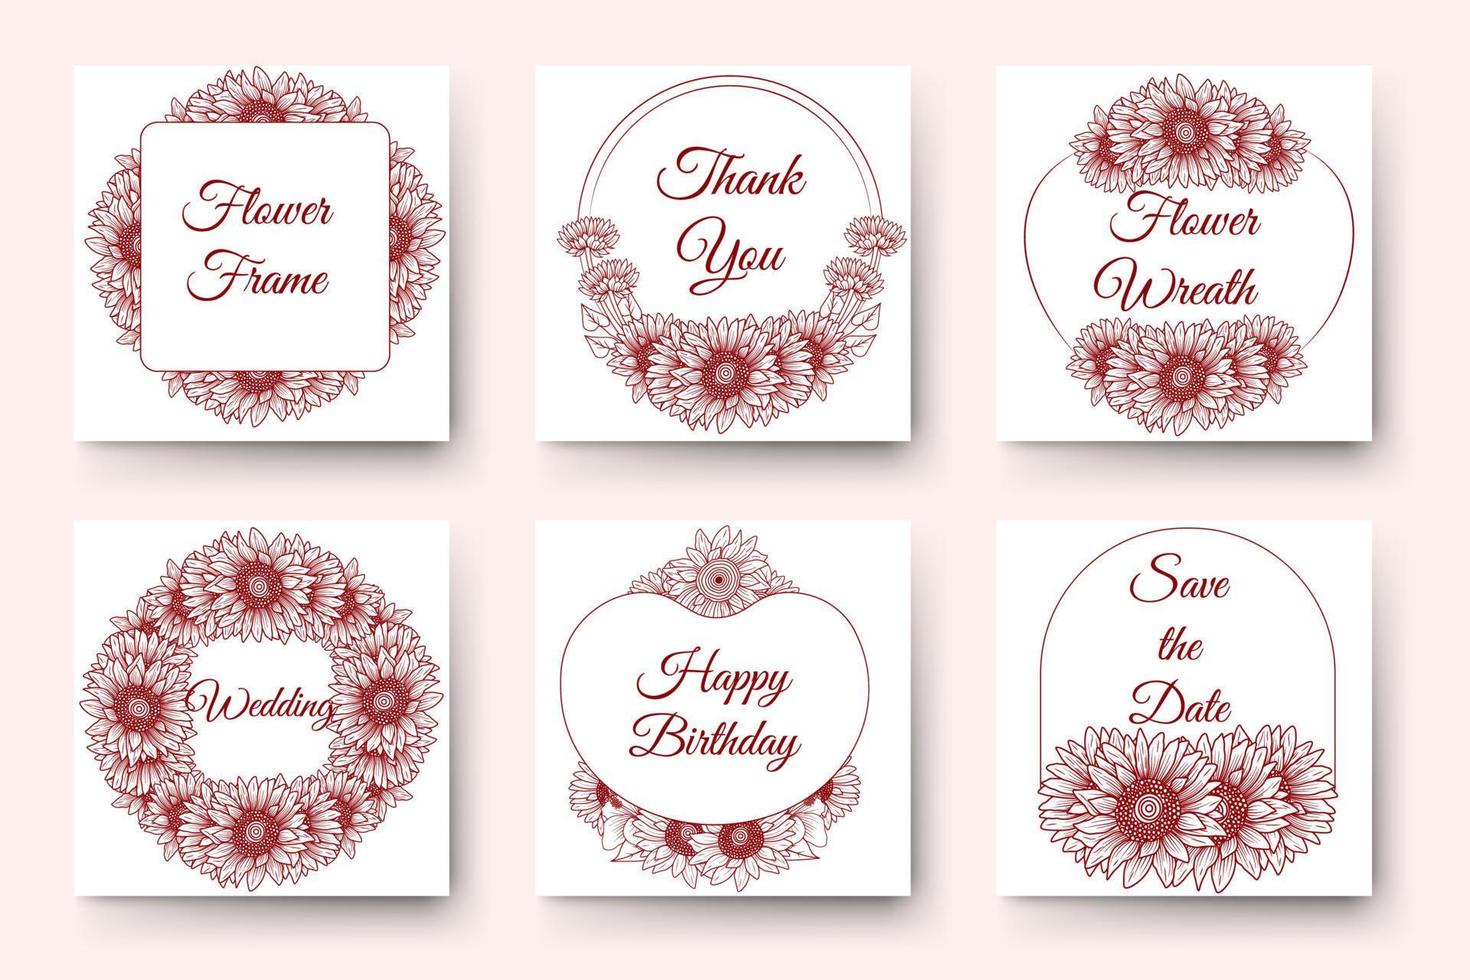 diseño de corona de flores dibujadas a mano con elementos florales para tarjeta de invitación de boda de año nuevo de cumpleaños vector